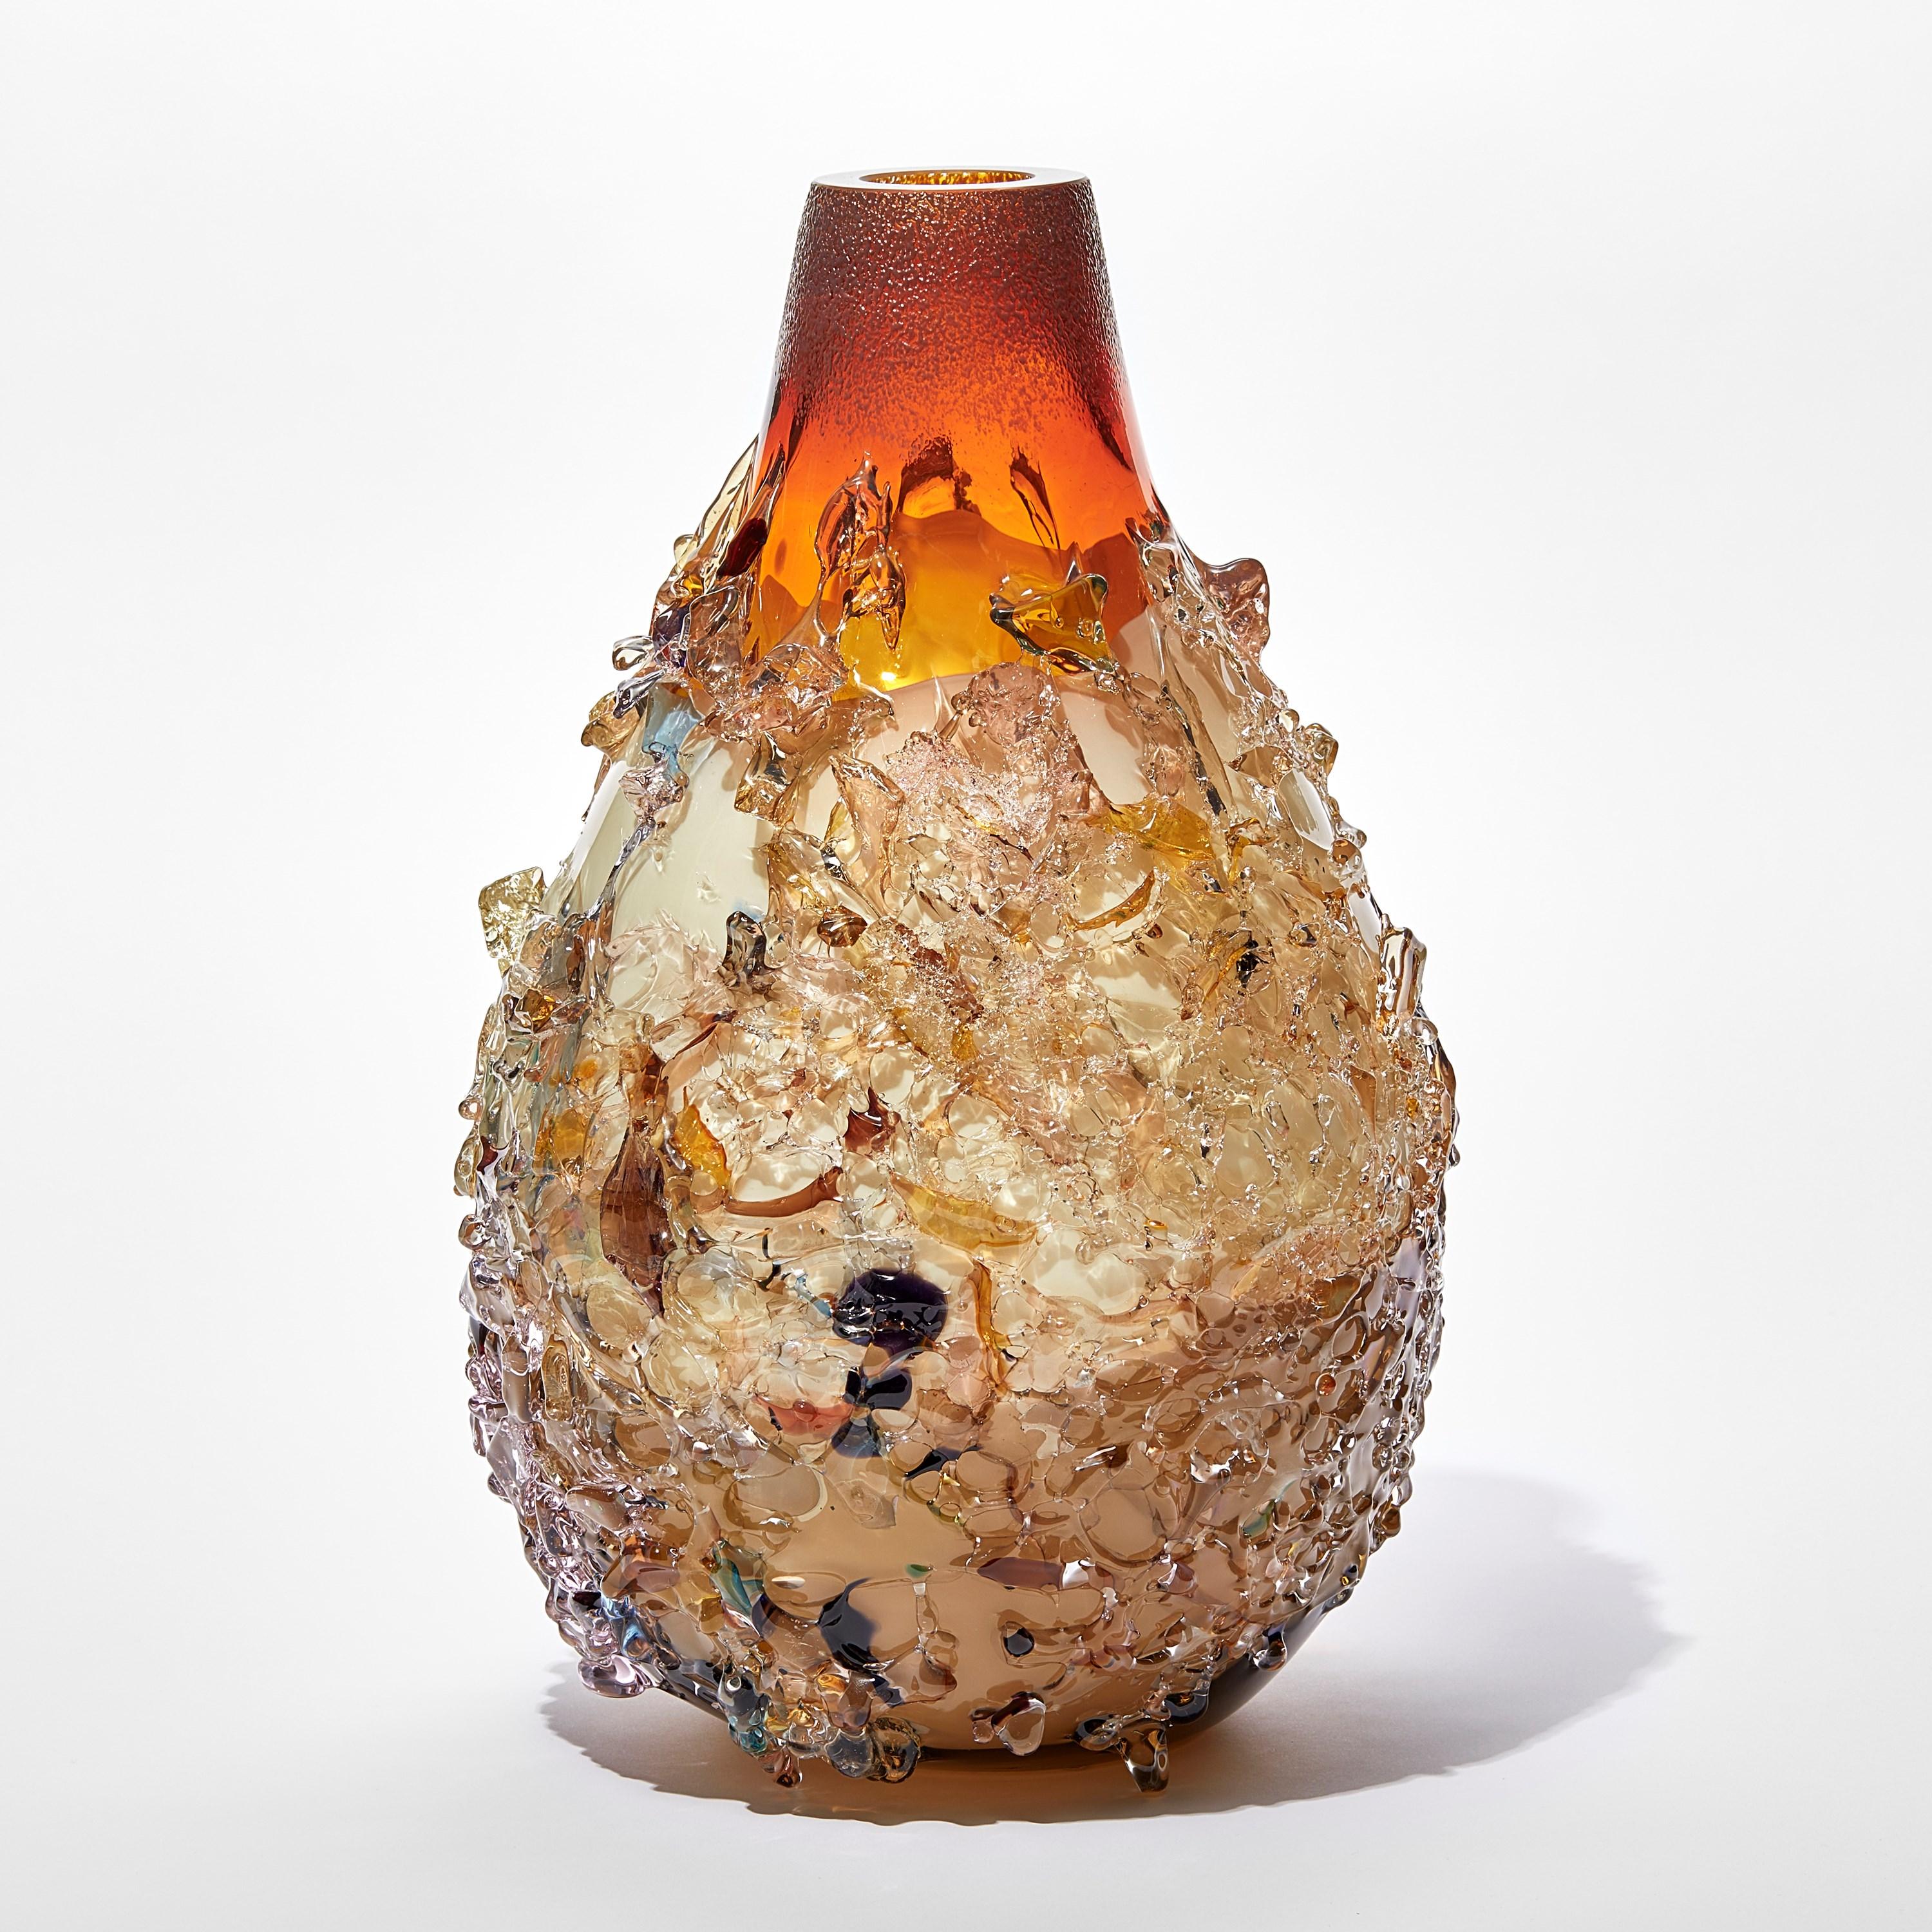 Sakura TFO23036 est un vase sculptural unique en verre d'art soufflé à la main orange brûlé, crème, jade et multicolore, recouvert d'un ornement en tesson de verre organique par l'artiste néerlandais Maarten Vorlijk. La pièce est polie à la flamme